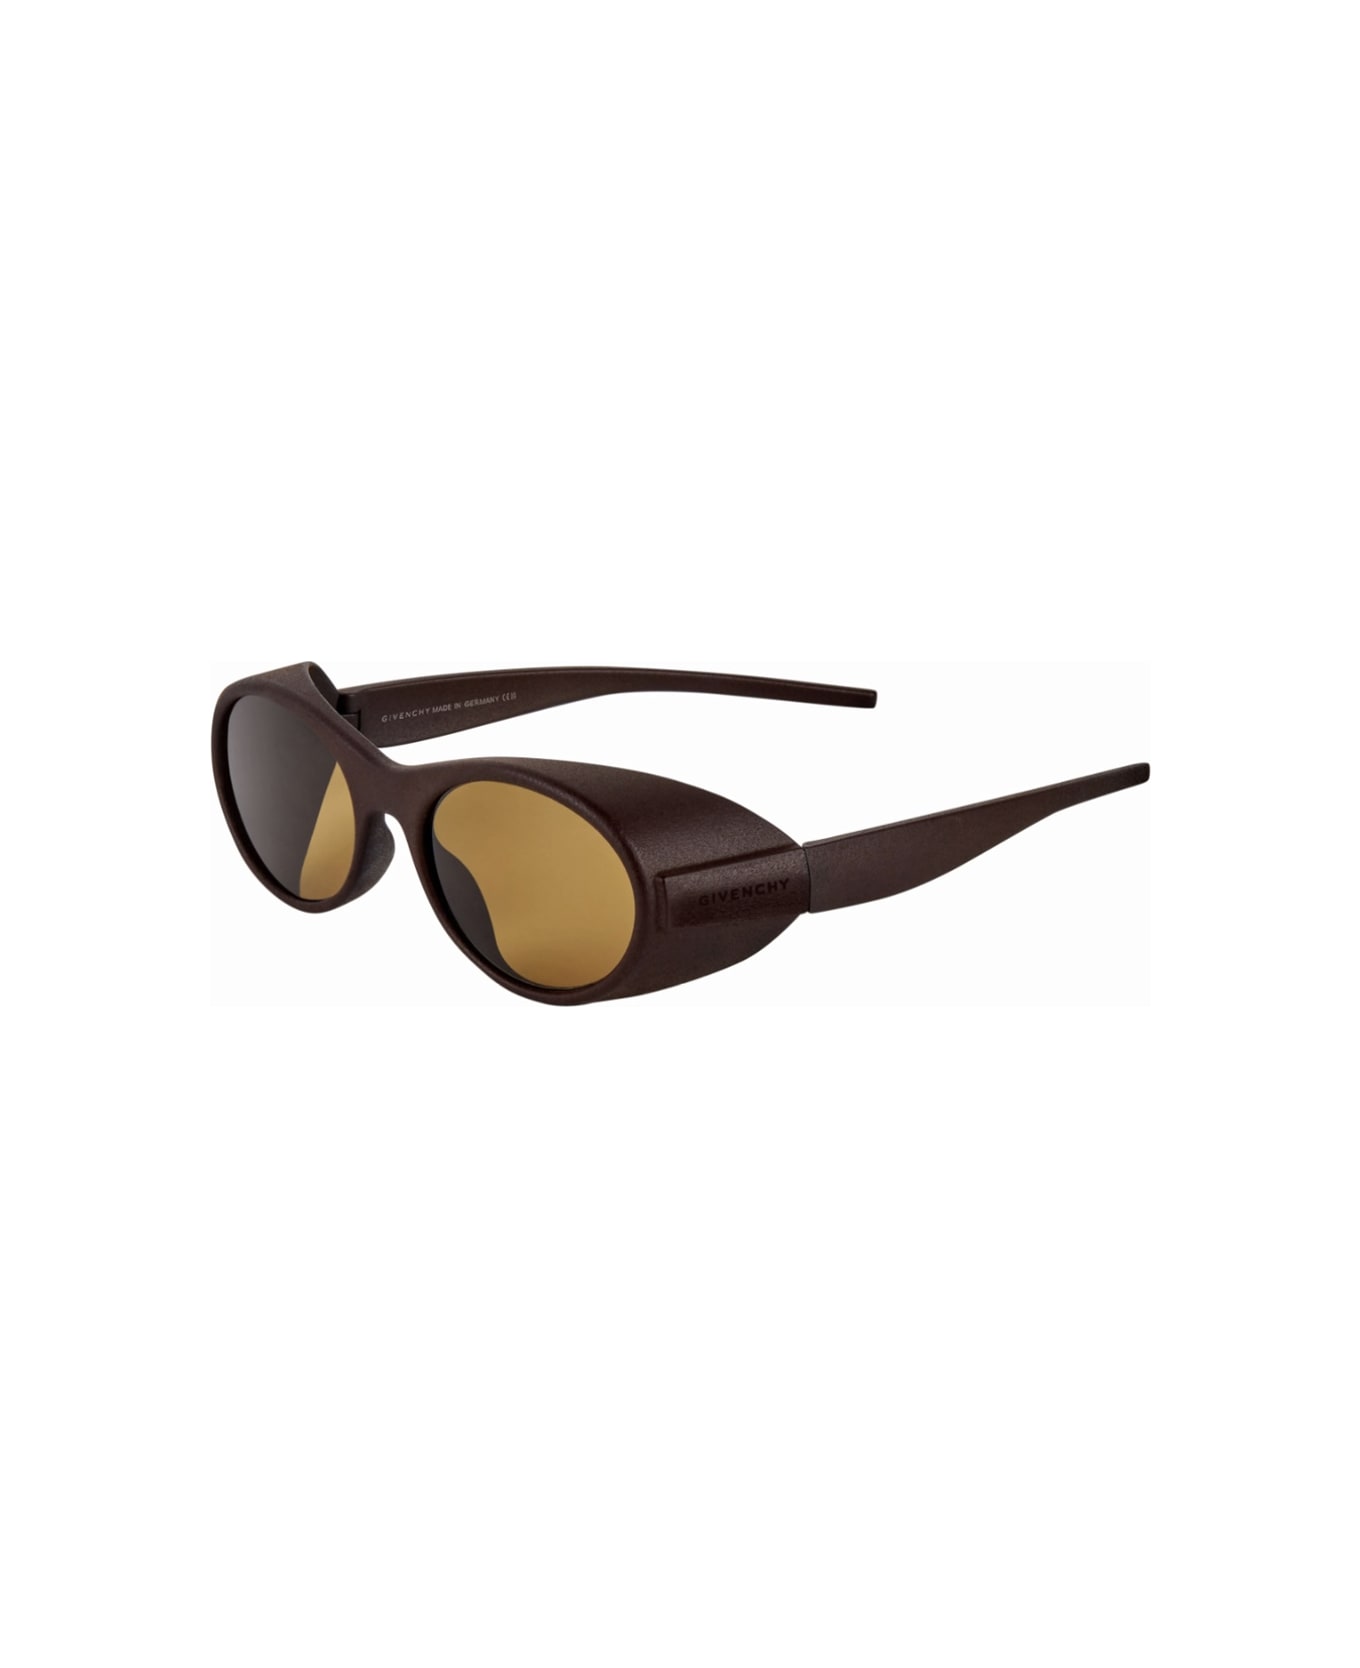 Givenchy Eyewear Gv40065i 49j Sunglasses - Marrone サングラス